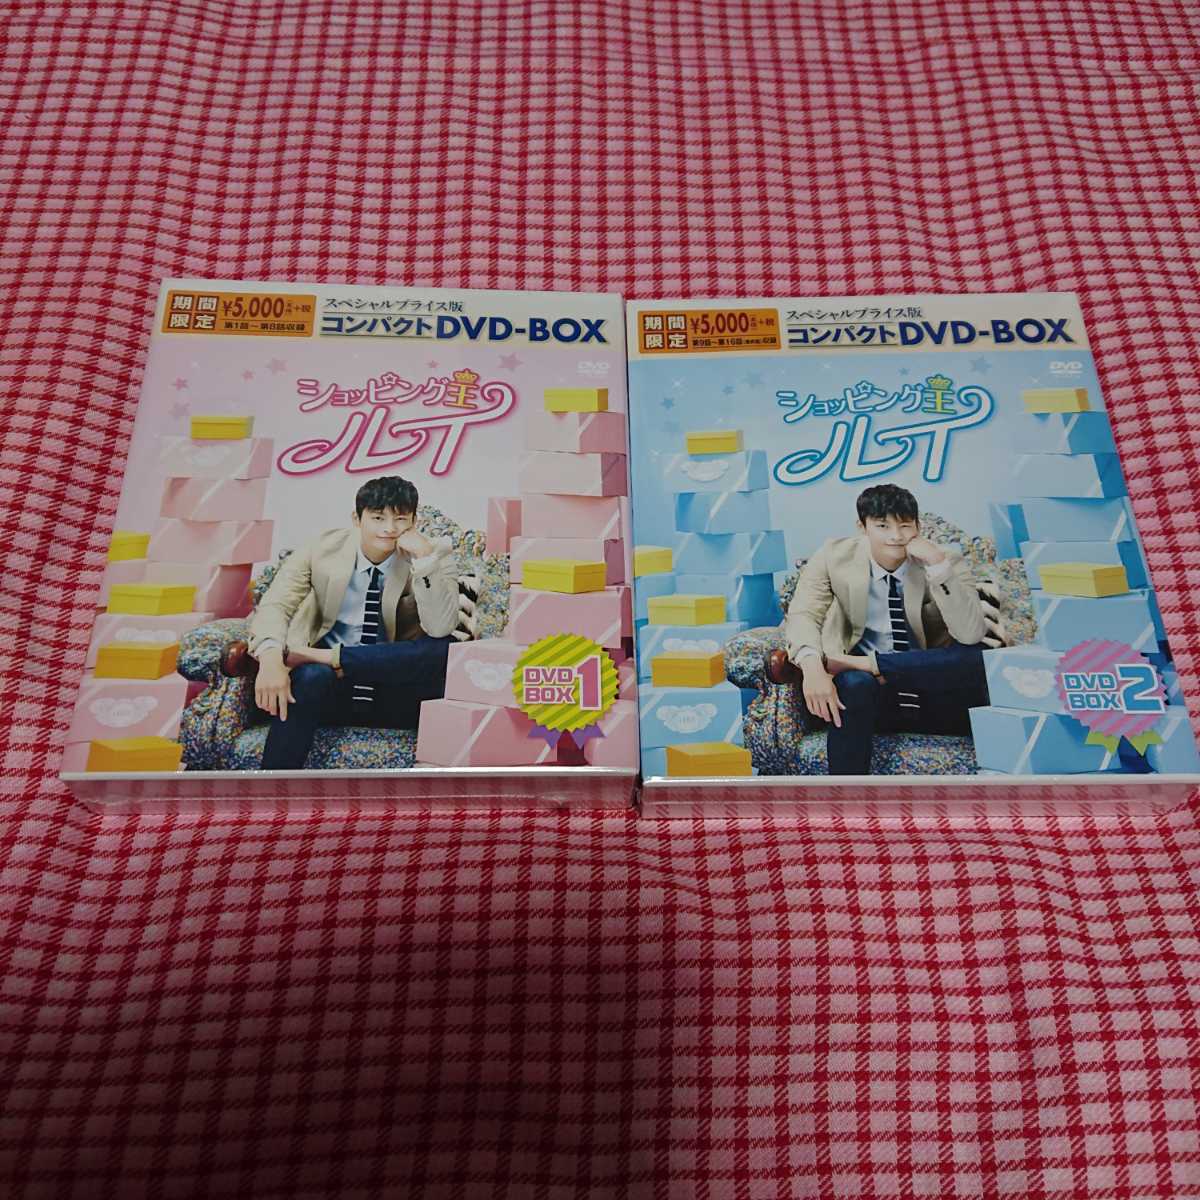 ラウンド 韓国ドラマ BOX2 2点セット DVD-BOX1 新品未開封☆ボーンド 